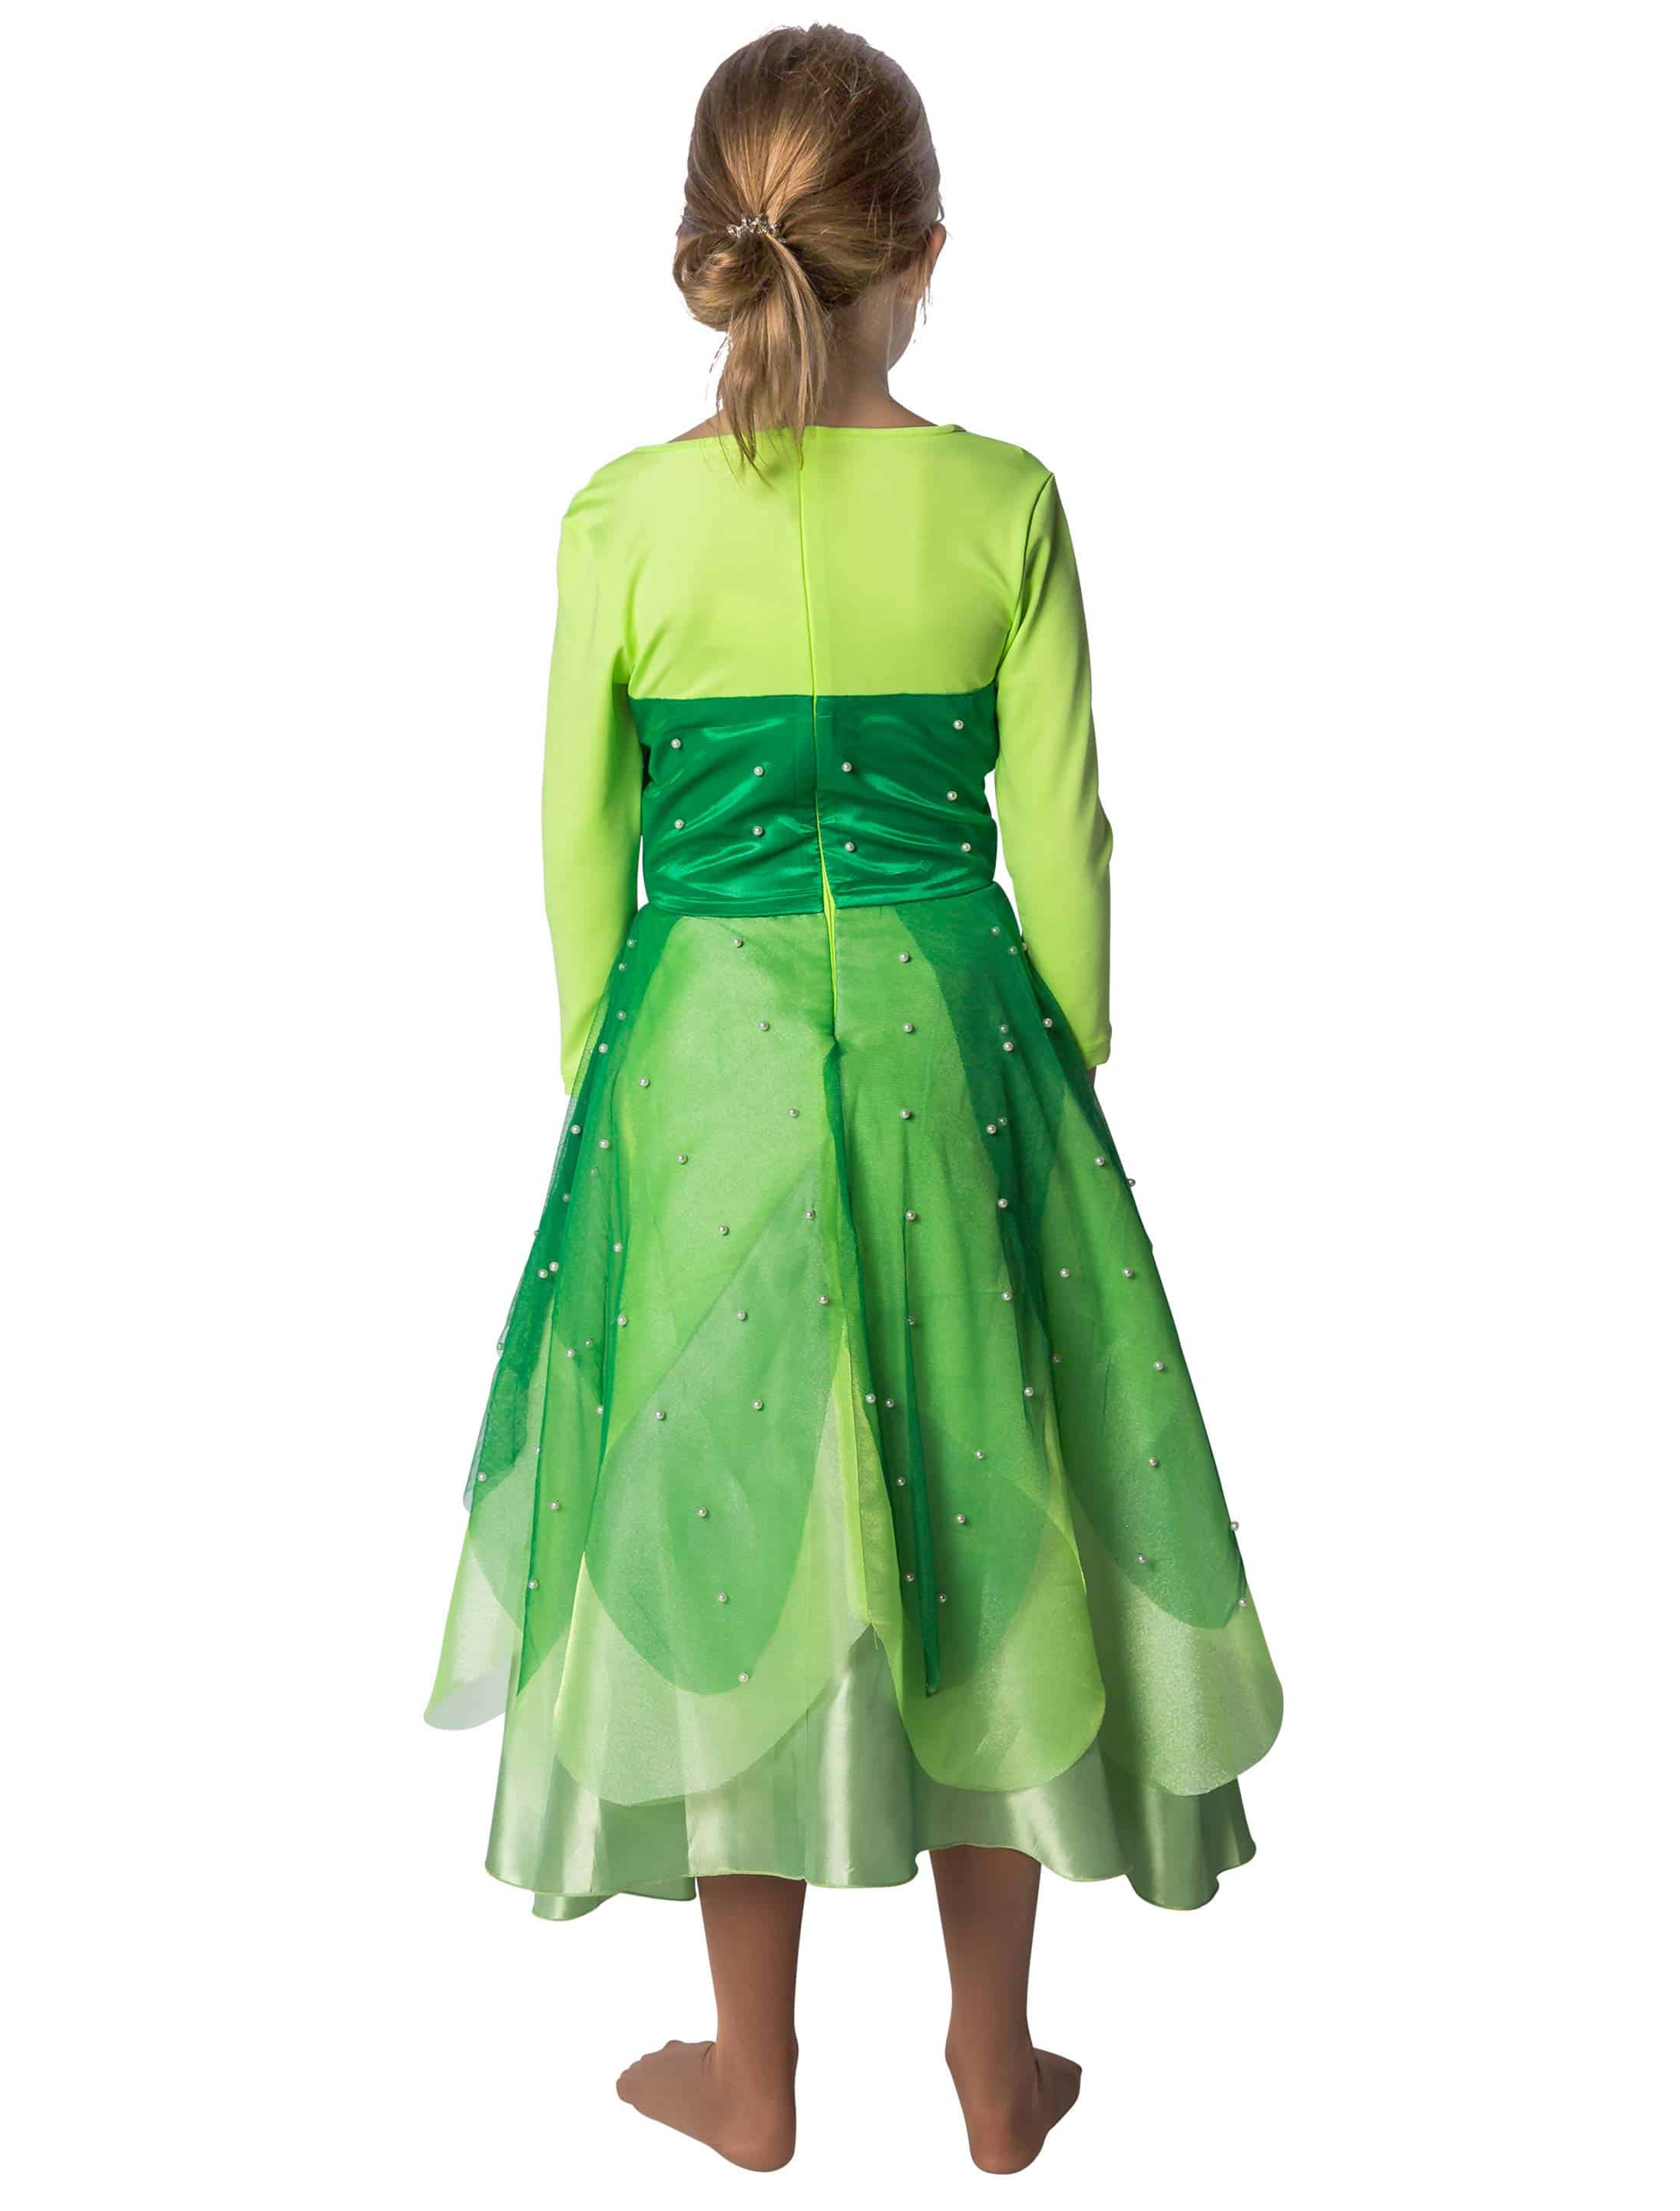 Kleid Froschkönigin Kinder grün 128